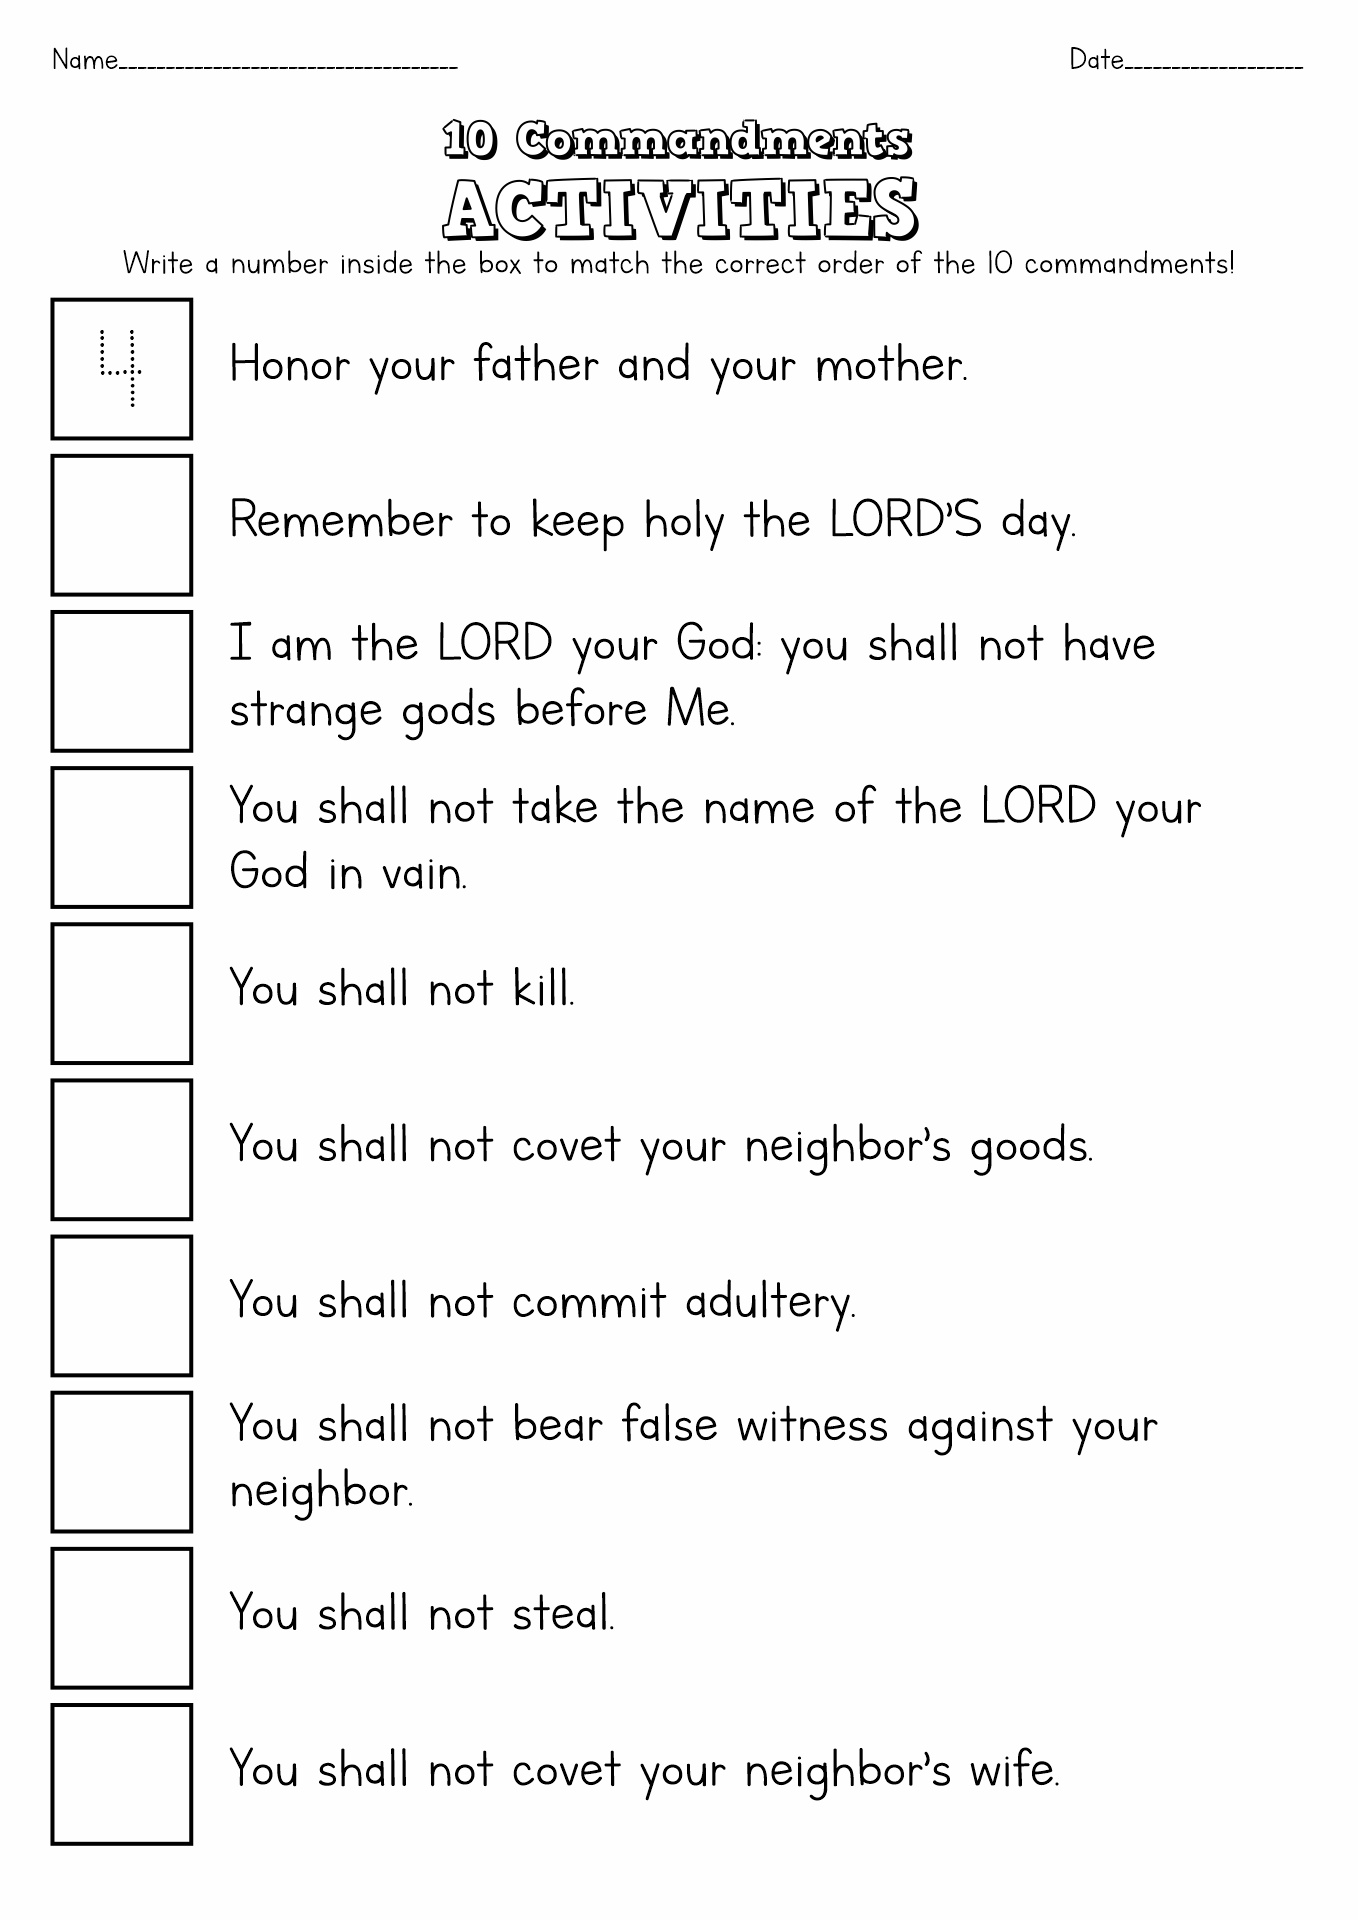 Ten Commandments Activities Image